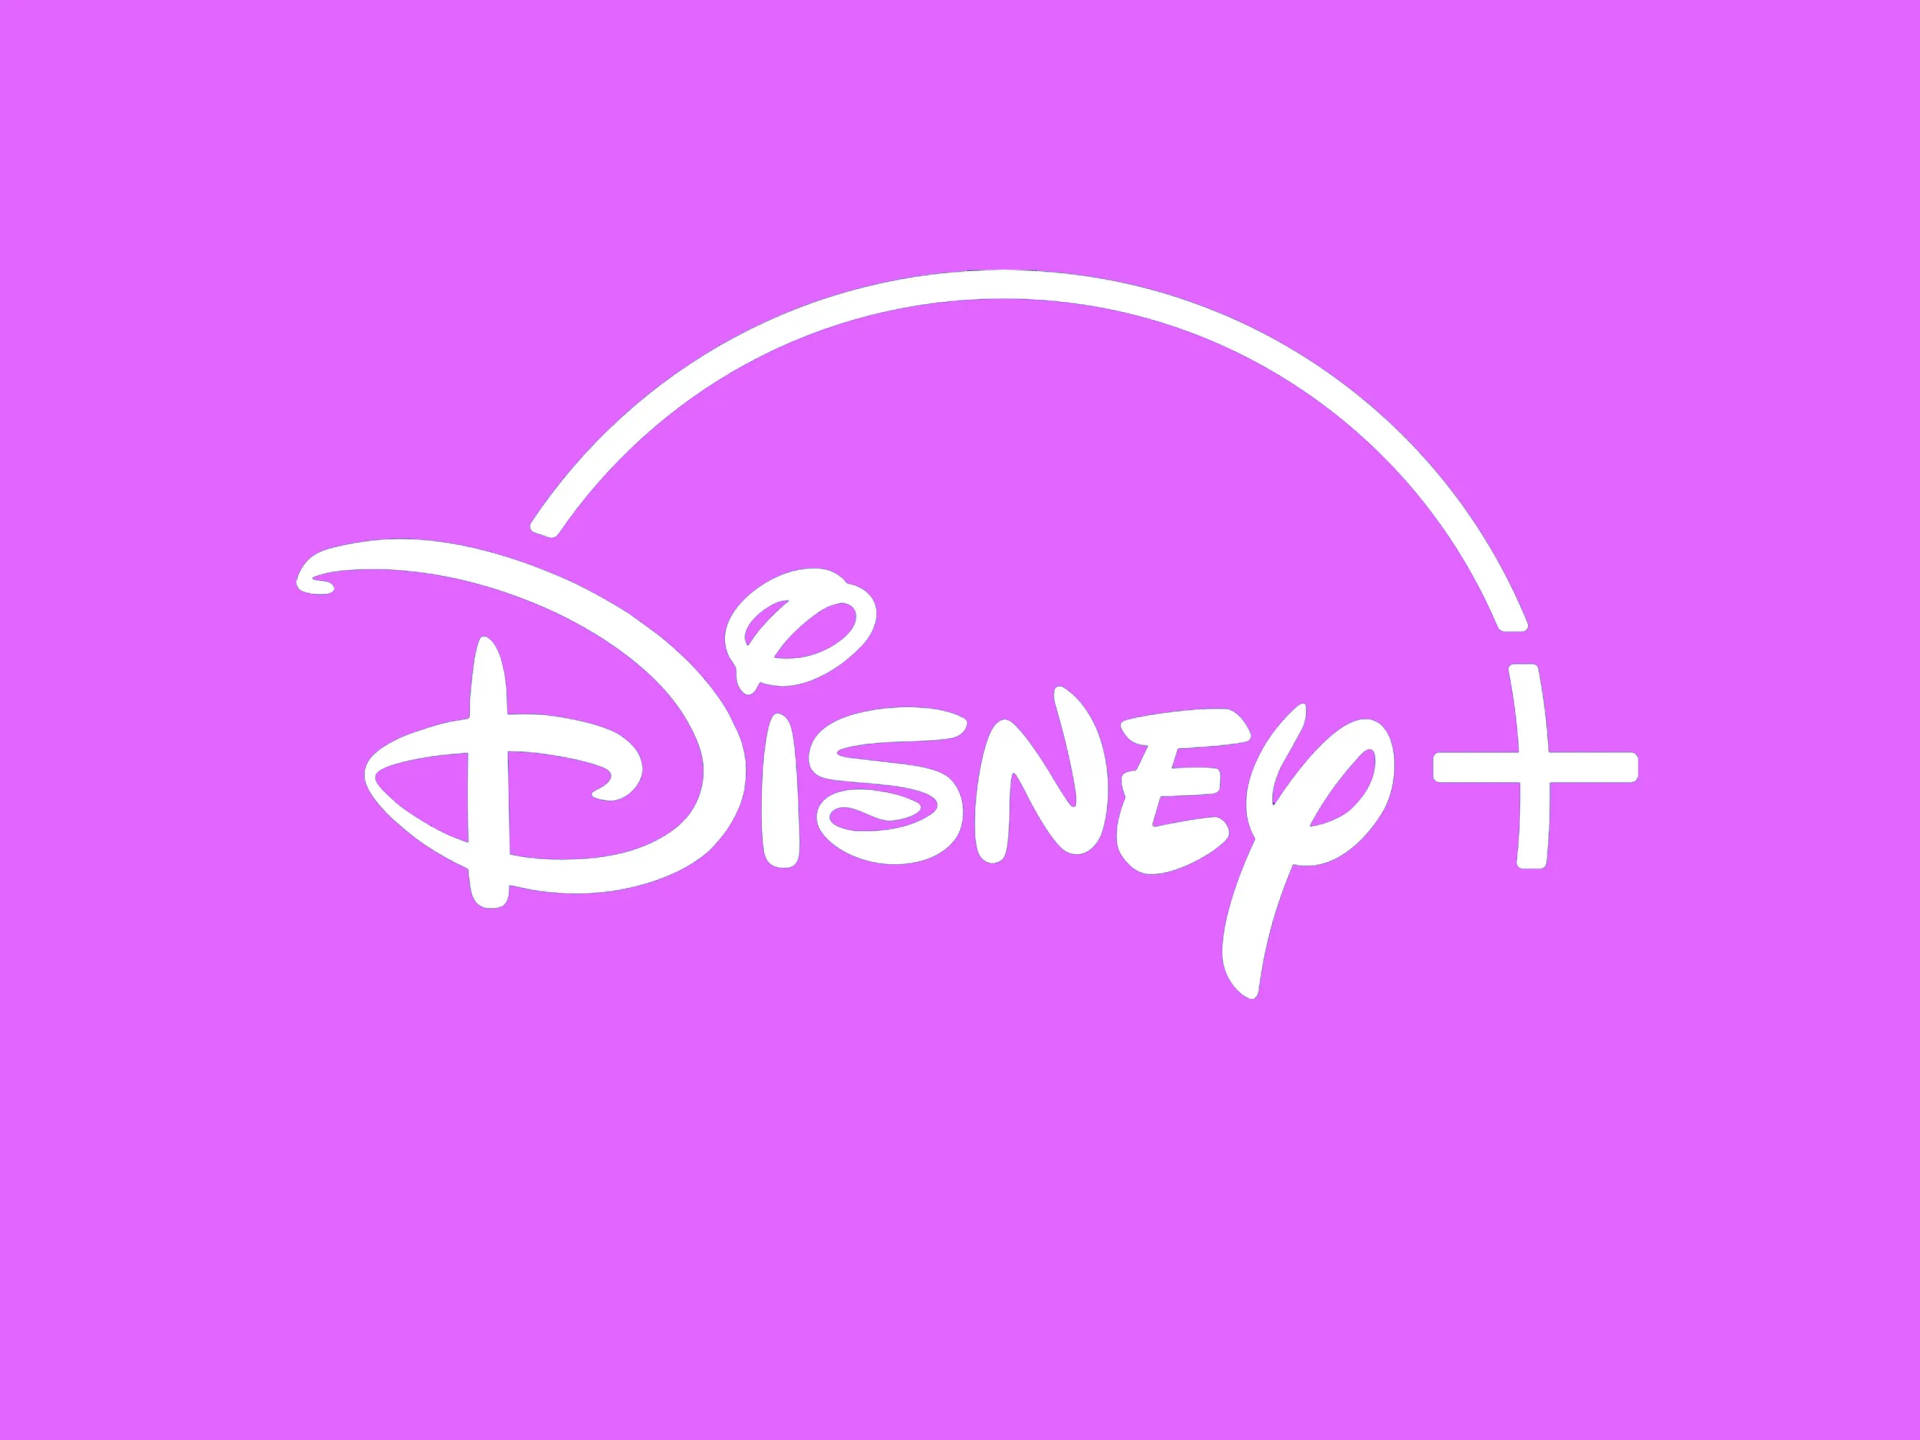 Download Disney Plus Pink Logo Wallpaper 